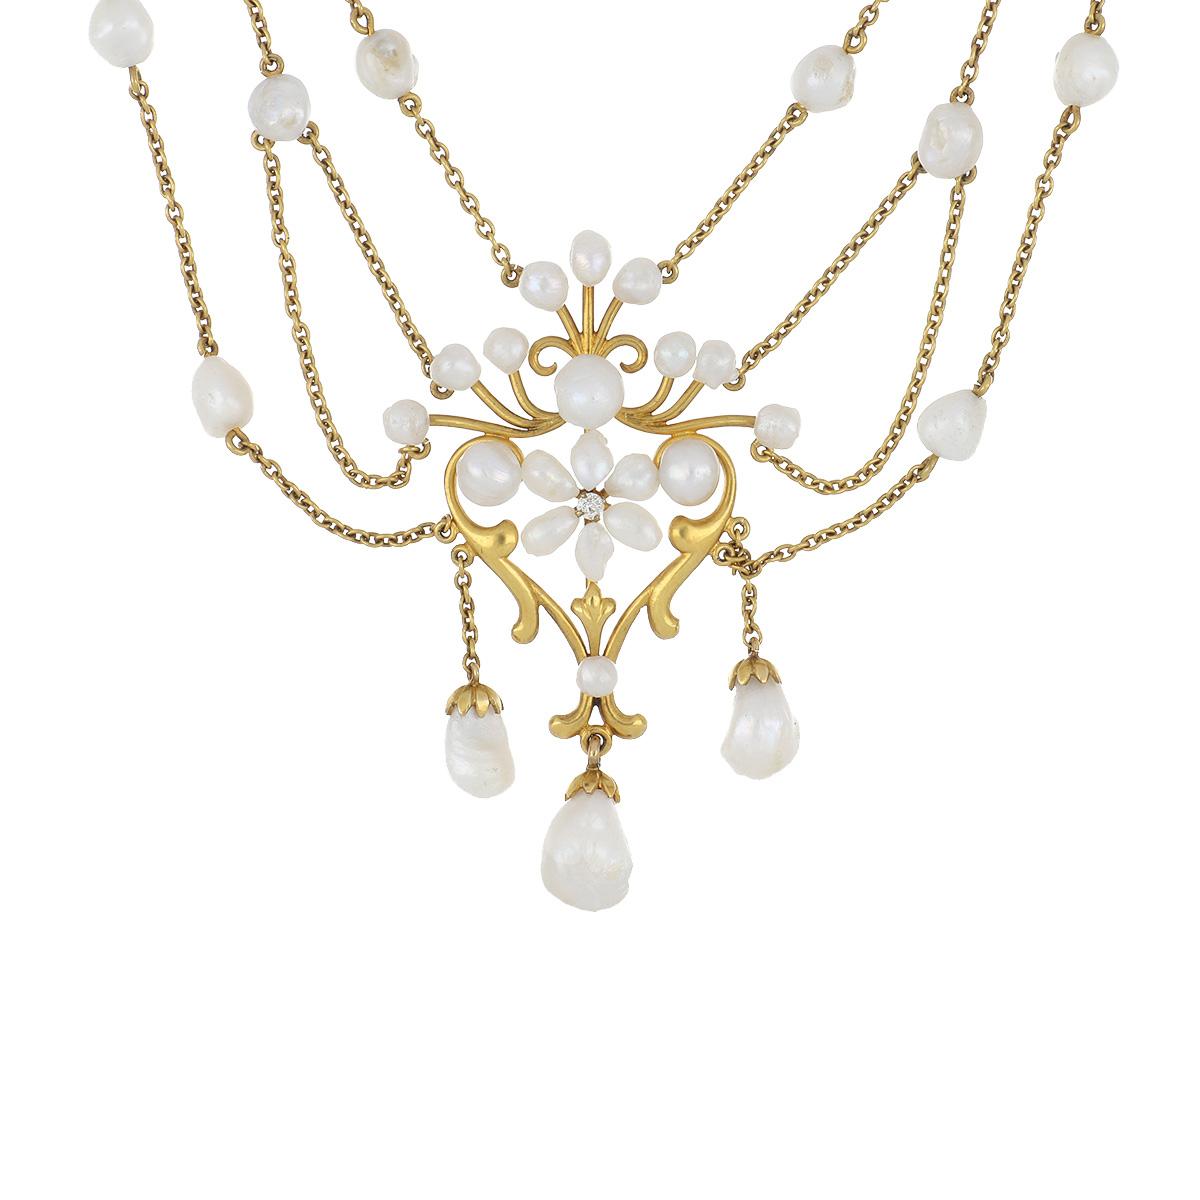 Collier en or jaune 14K à motif floral Art Nouveau.  Il y a 3 fleurons, chacun centré de diamants et de perles d'eau douce.  Le collier mesure 15 3/4 pouces de long. Circa 1900.